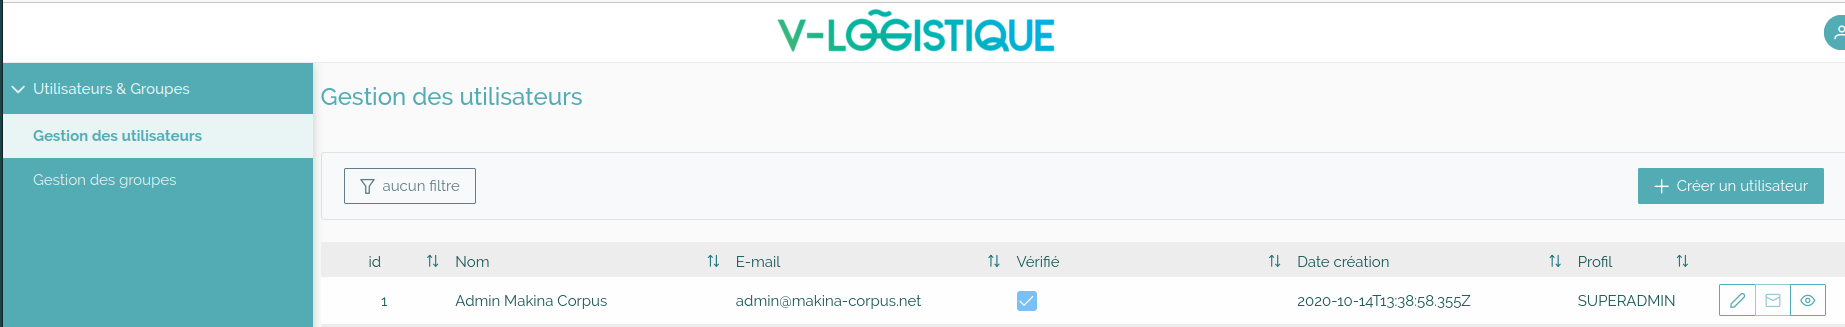 V_Logistique_Gestion_utilisateurs.png